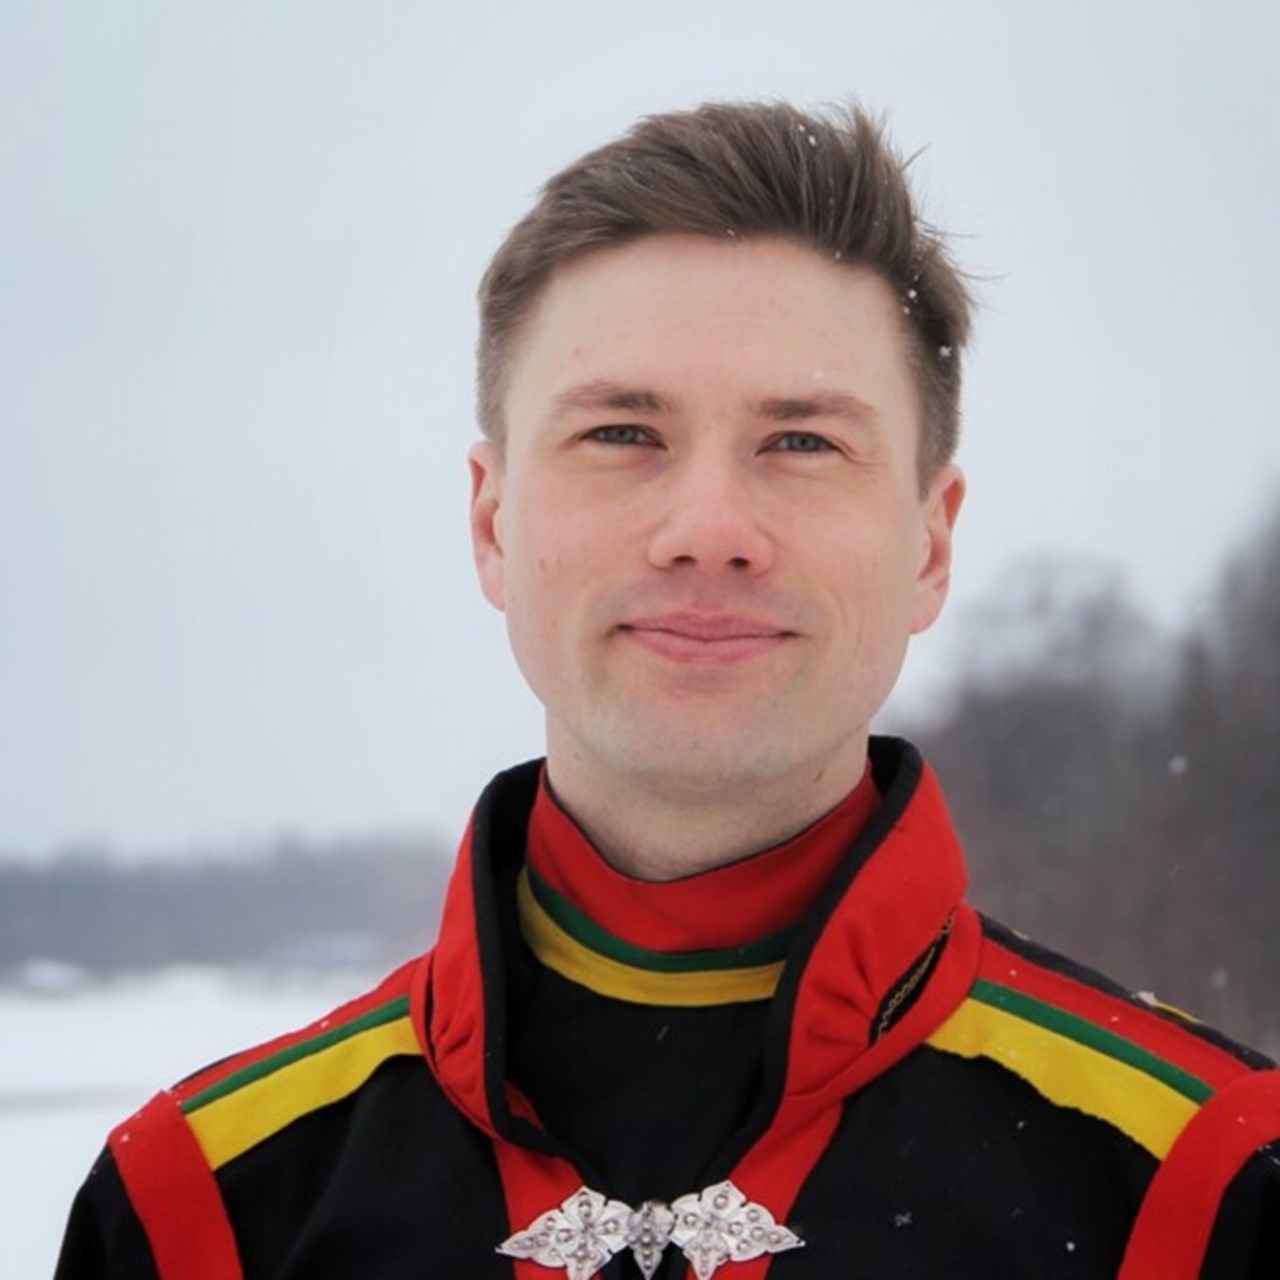 Porträttbild på Jon Petter Stoor i samedräkt utomhus vintertid